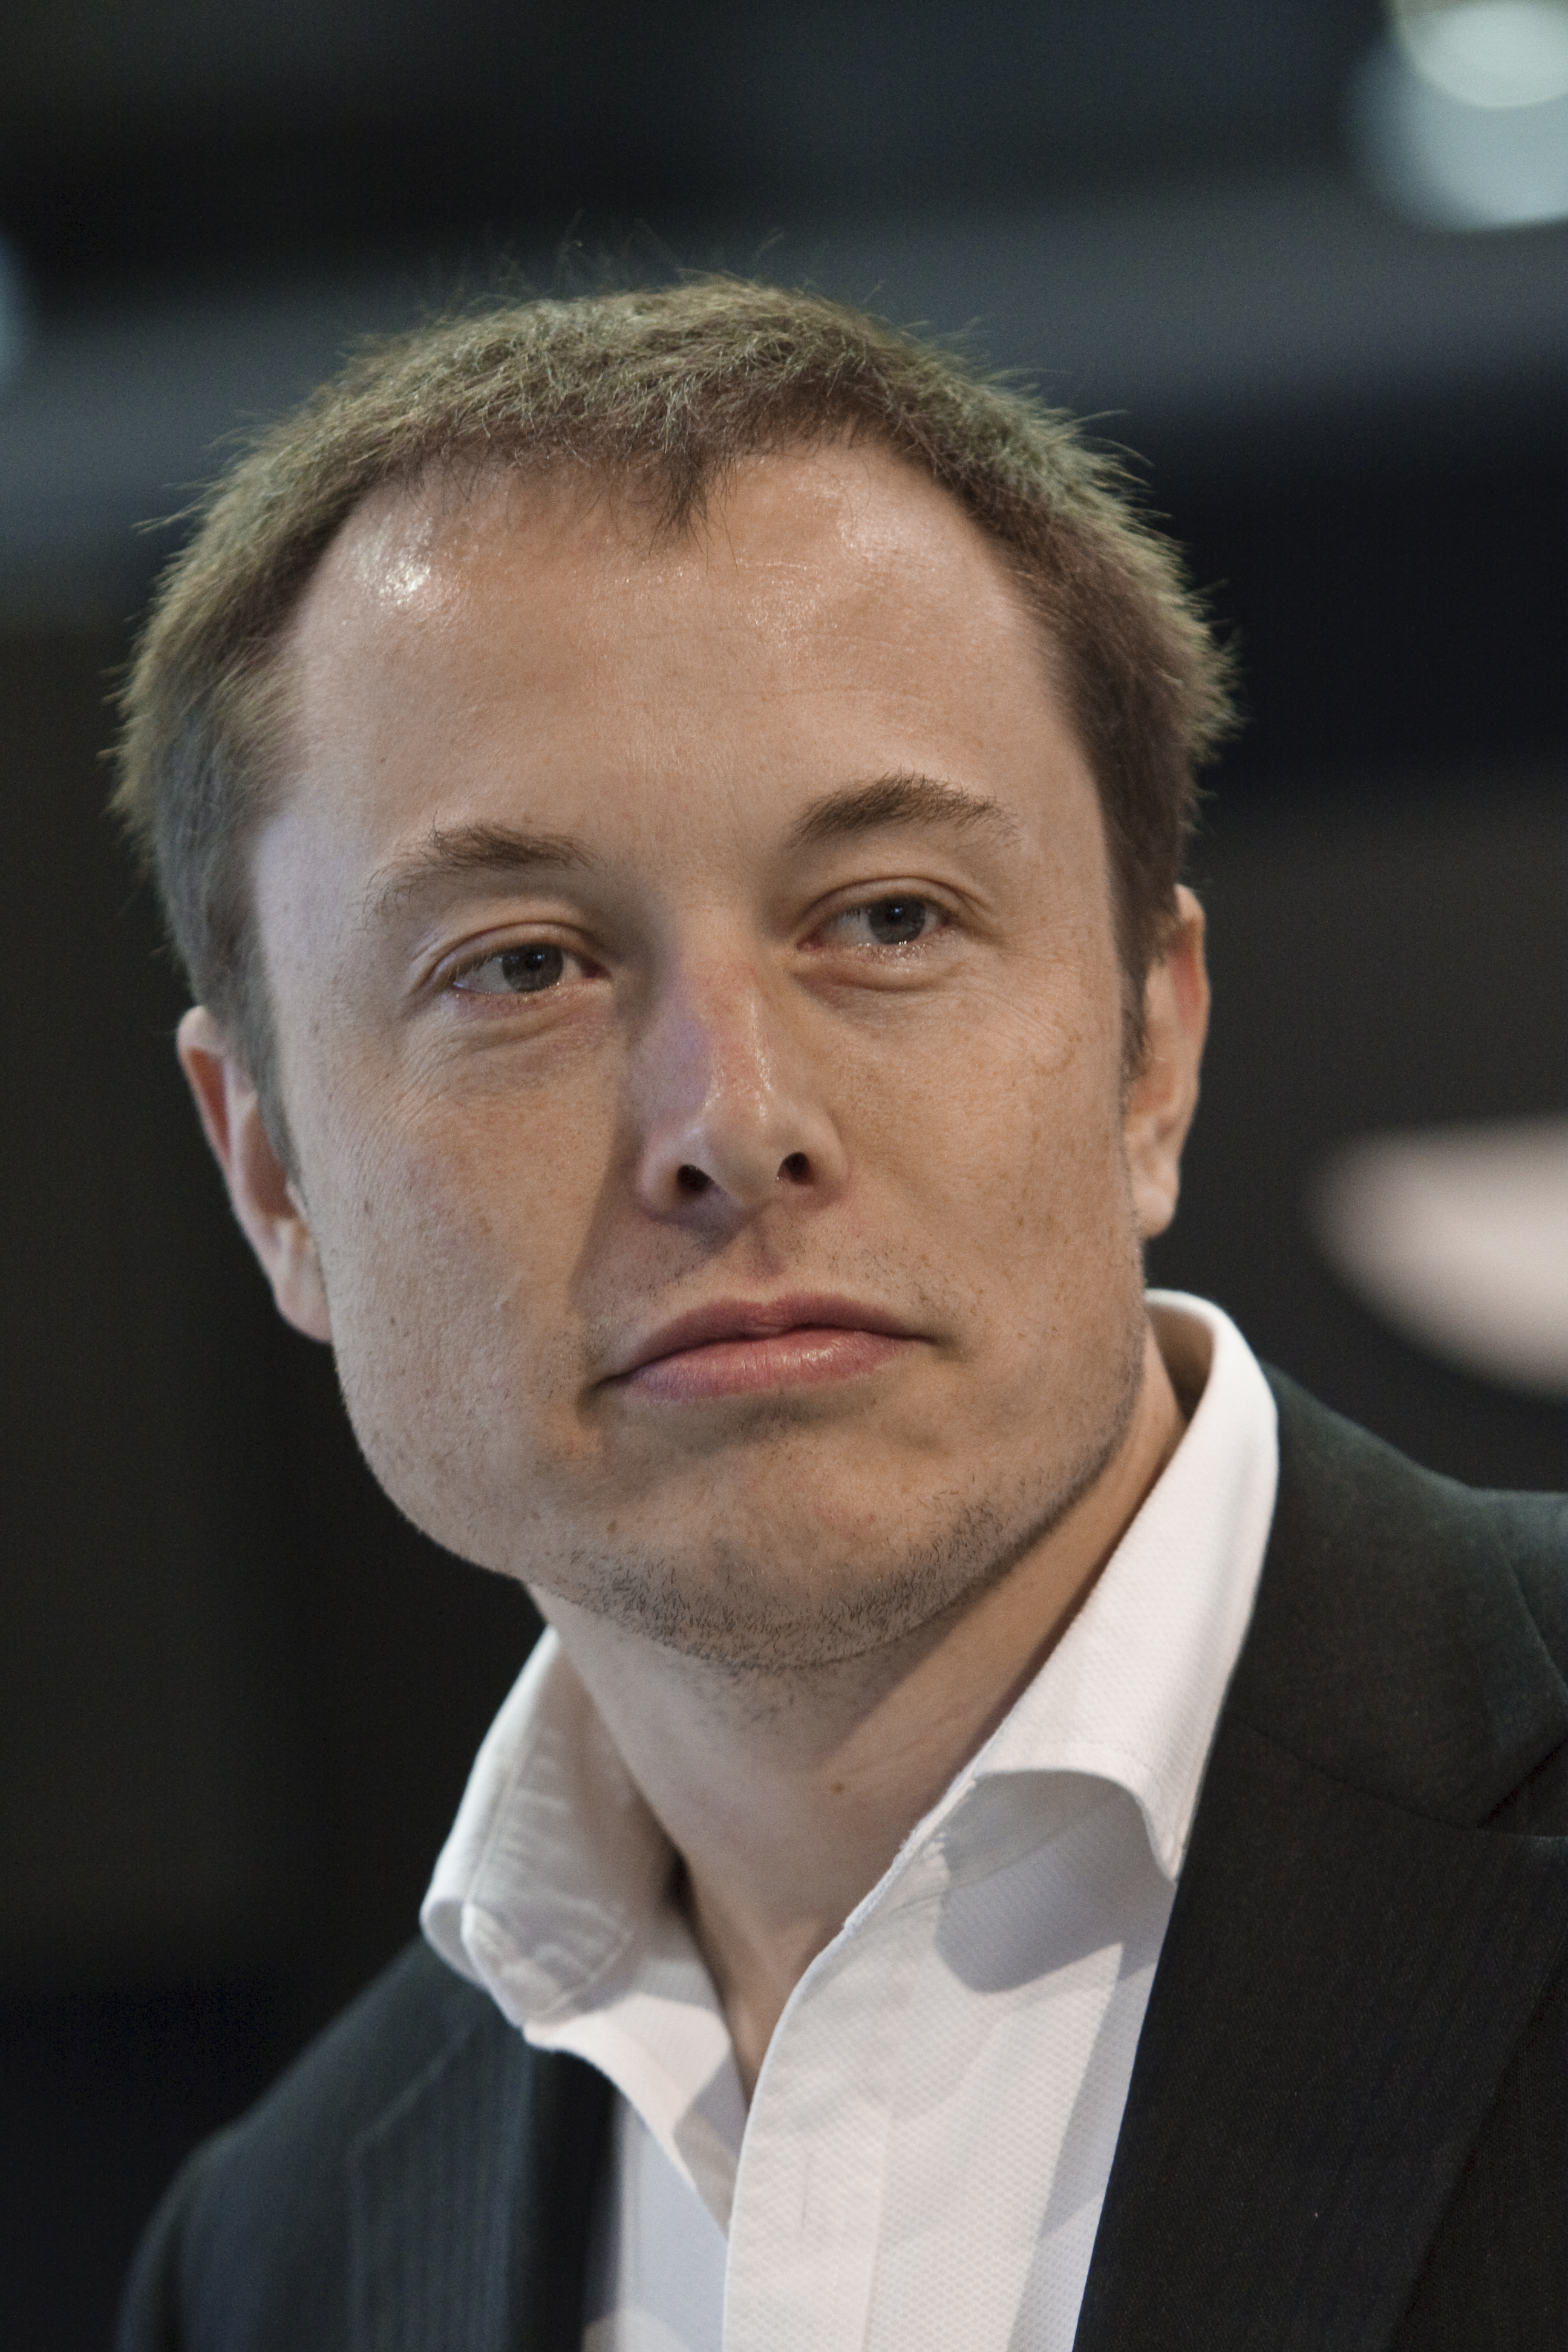 Elon Musk lors d'une conférence de presse de Tesla Motors pendant le salon de l'automobile nord-américain 2009, le 13 janvier 2009. | Source : Getty Images